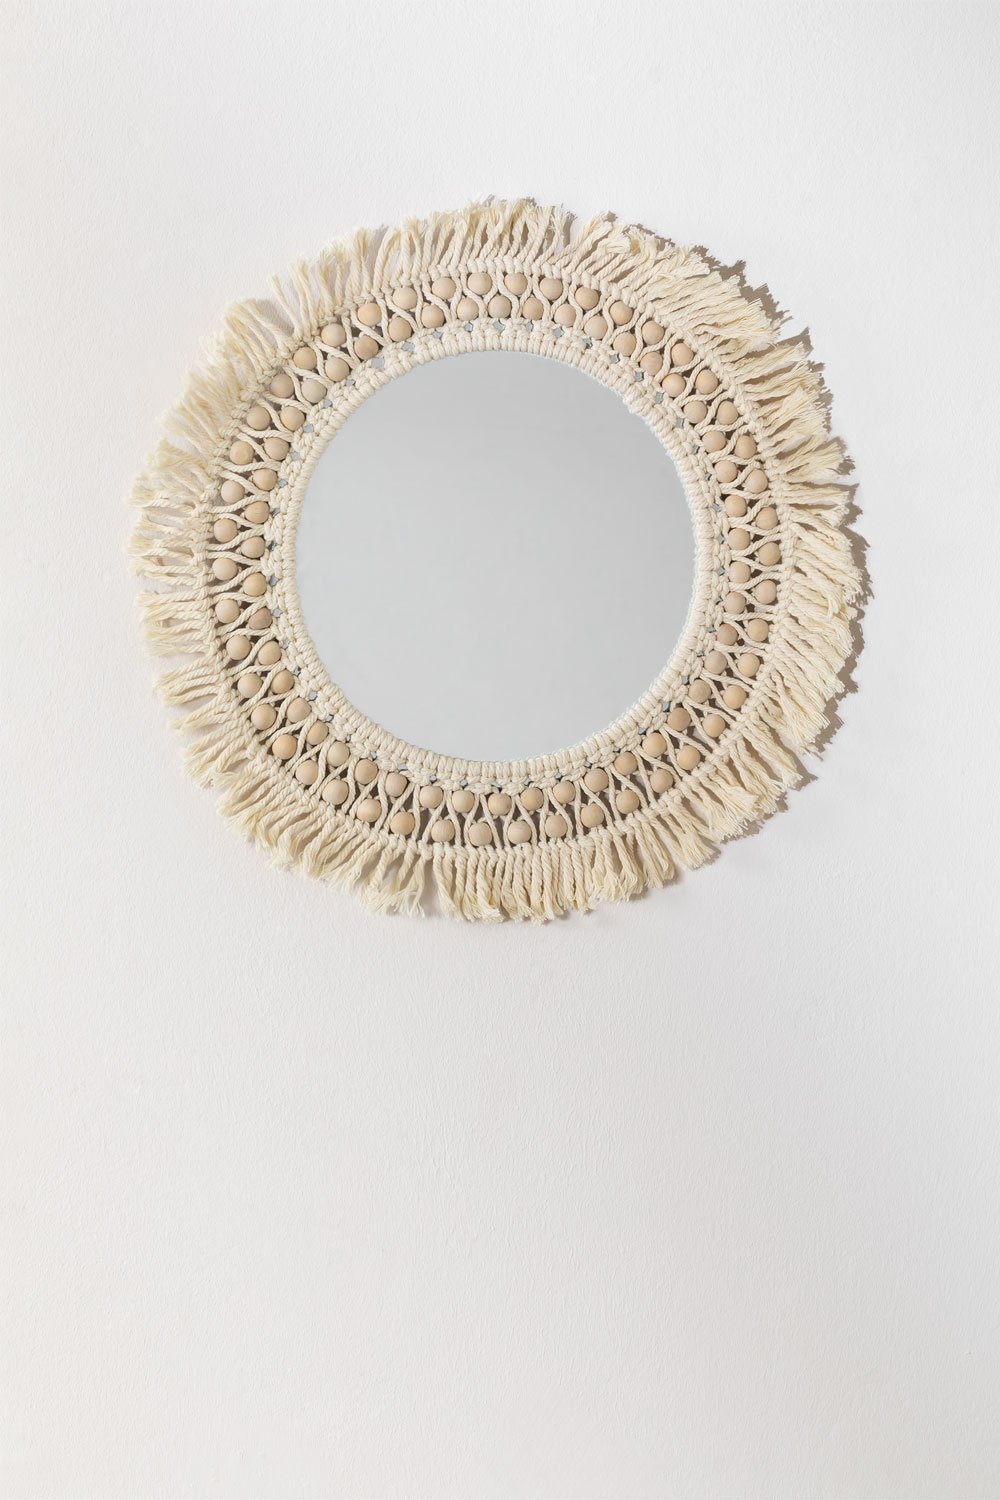 Macramé Round Wall Mirror (Ø50 cm) Jarn, gallery image 1